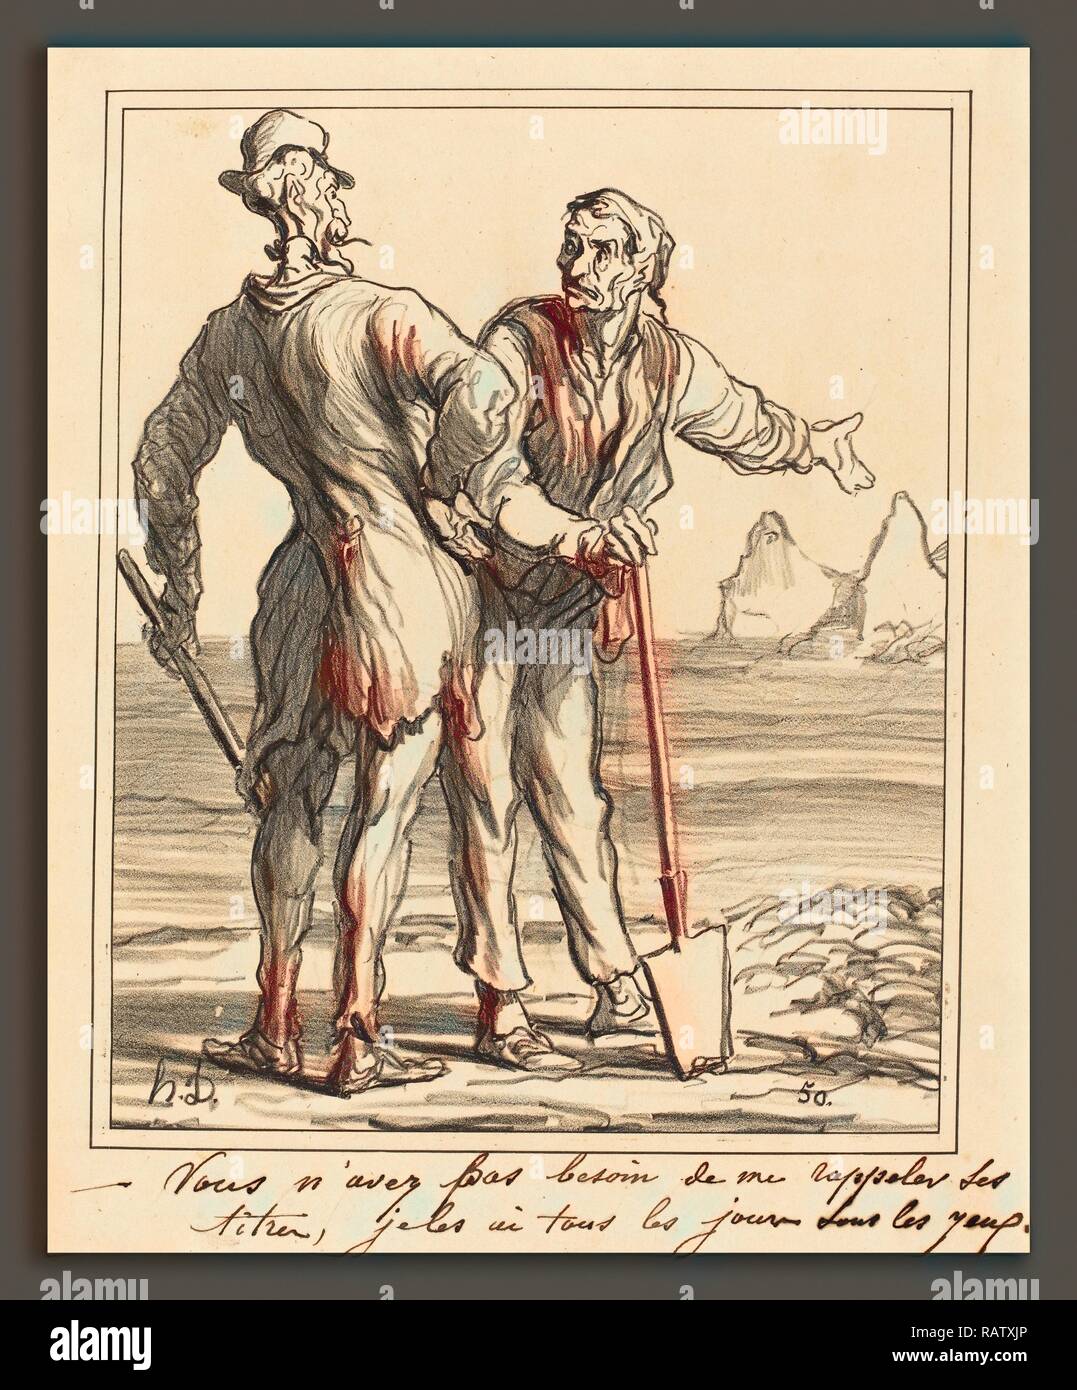 Honoré Daumier (Französisch, 1808-1879), Vous n'avez pas Besoin de mich rappeler ses Titer, 1871, Lithographie. Neuerfundene Stockfoto